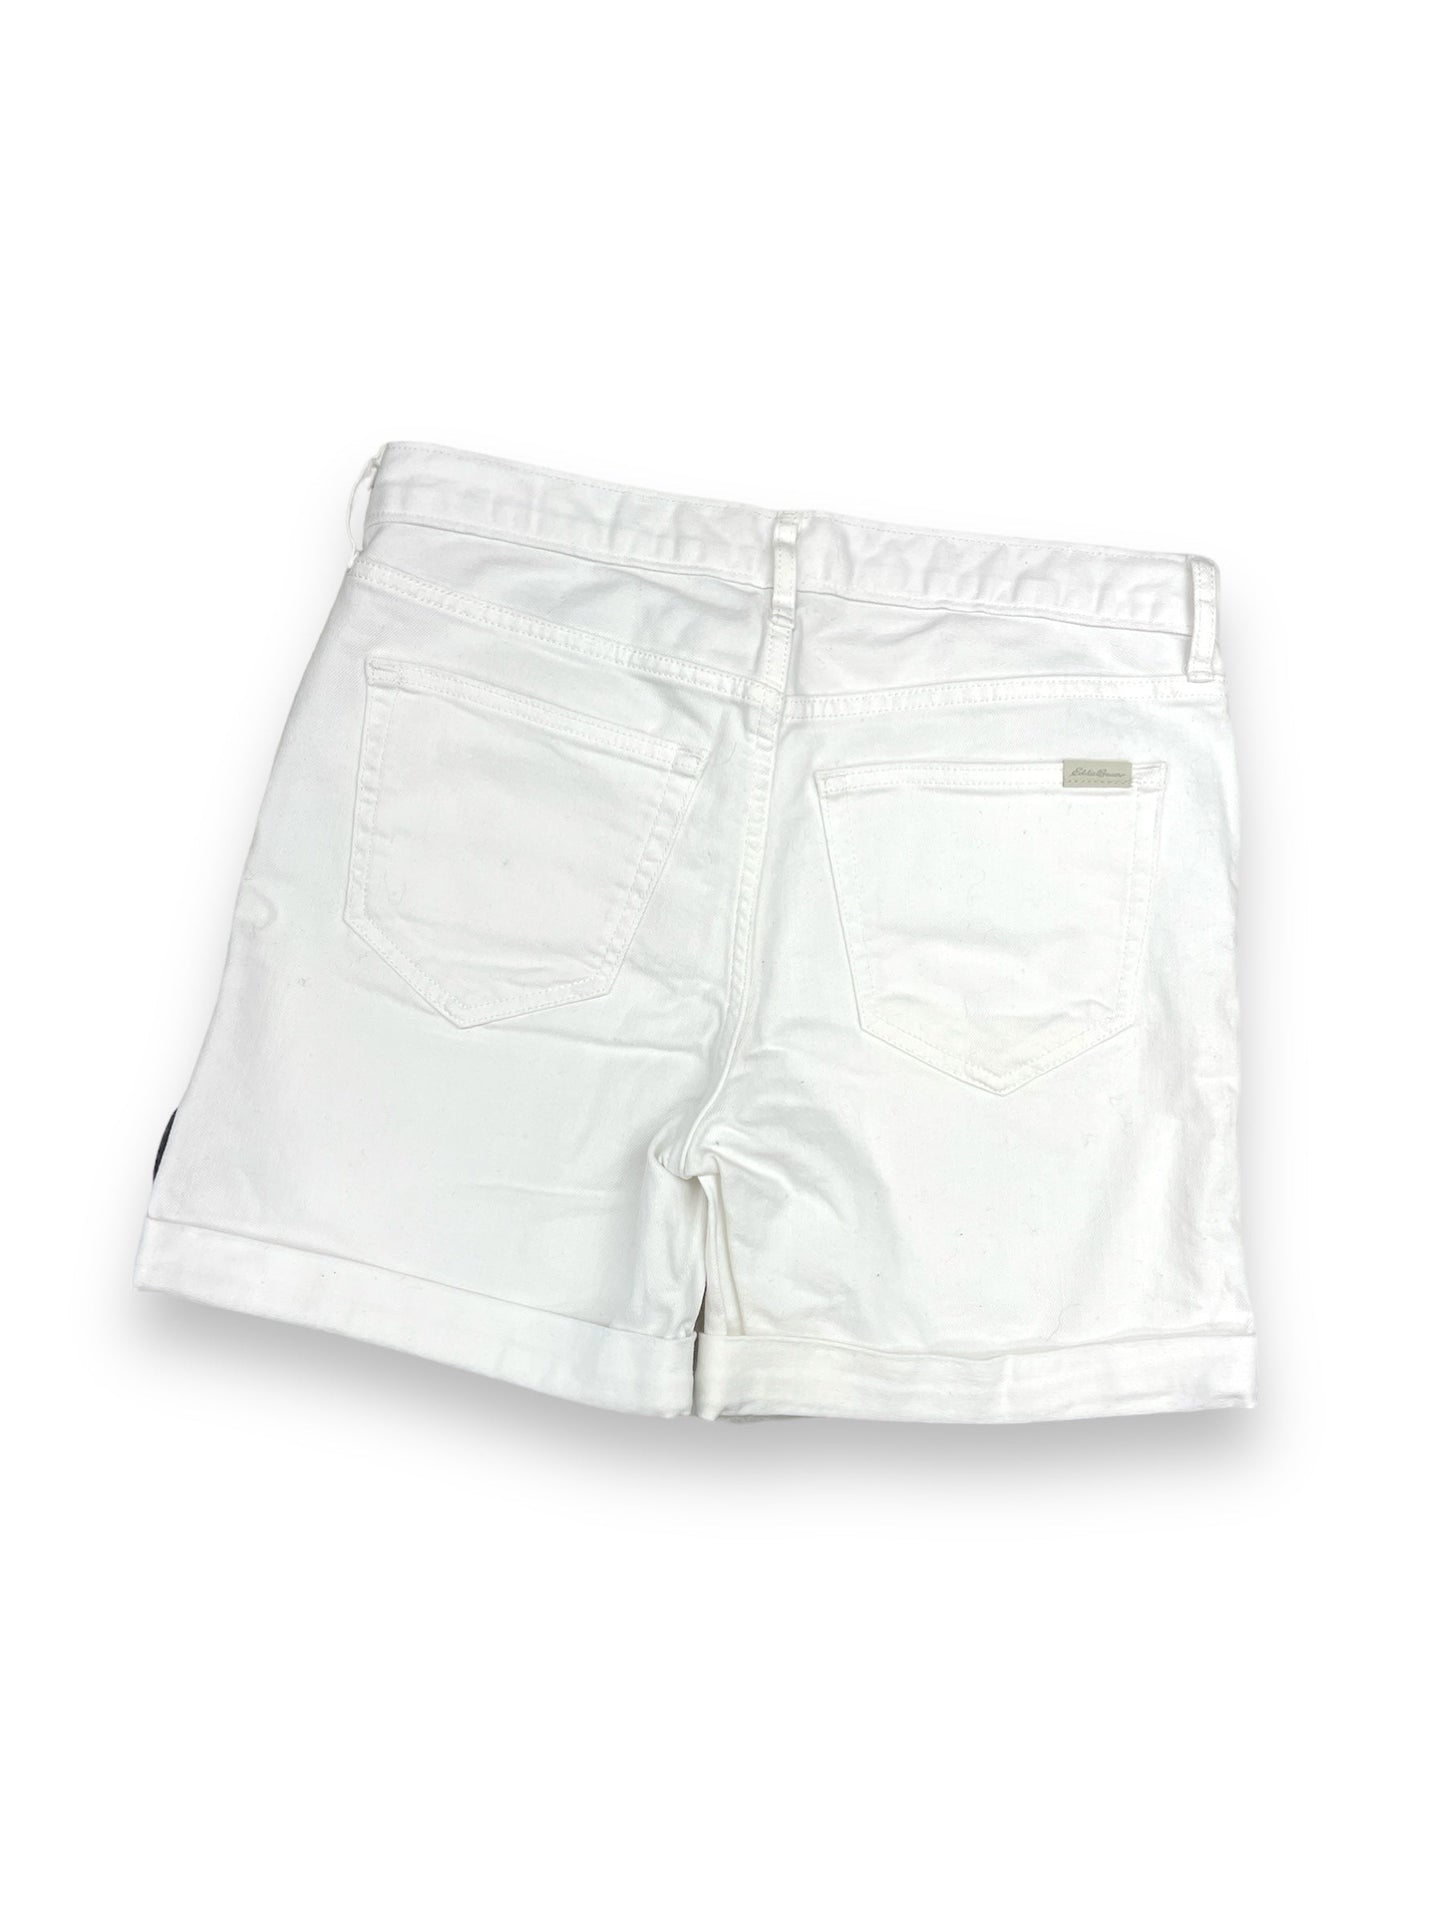 Shorts By Eddie Bauer  Size: 2